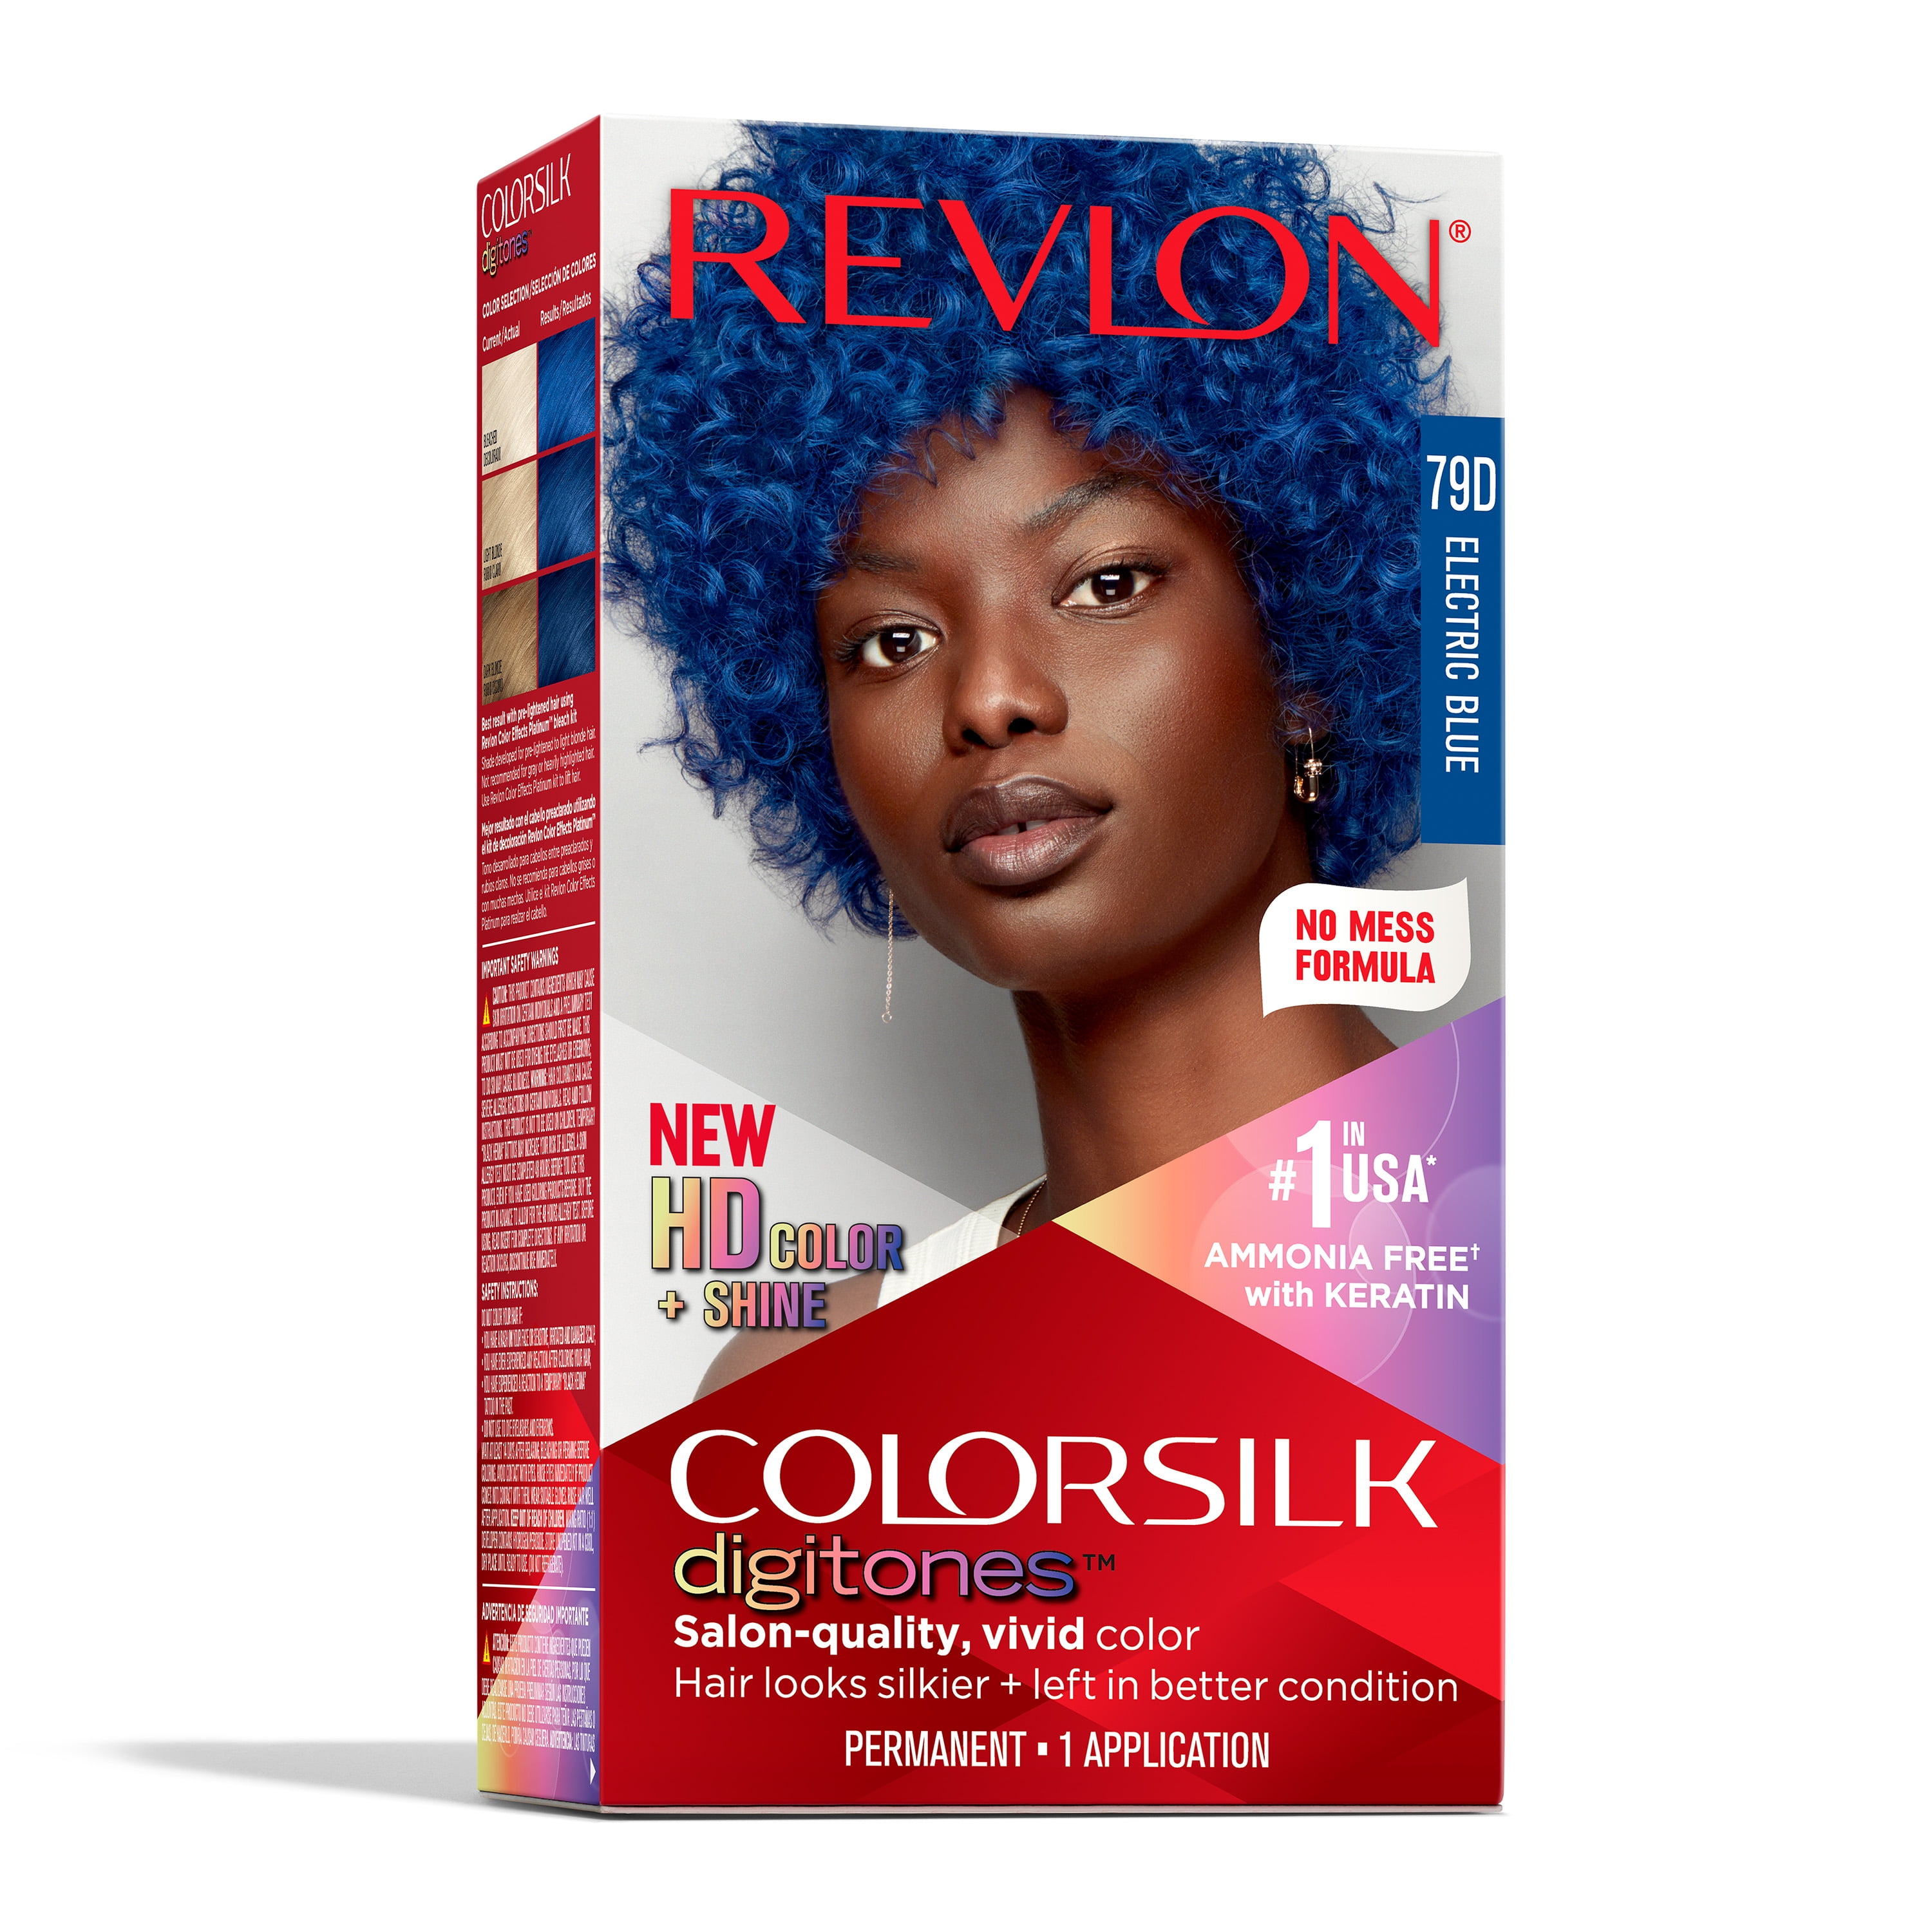 Revlon Permanent Hair Color Colorsilk Digitones with Keratin, 79D Electric  Blue (Pack of 1), 79D Electric Blue 